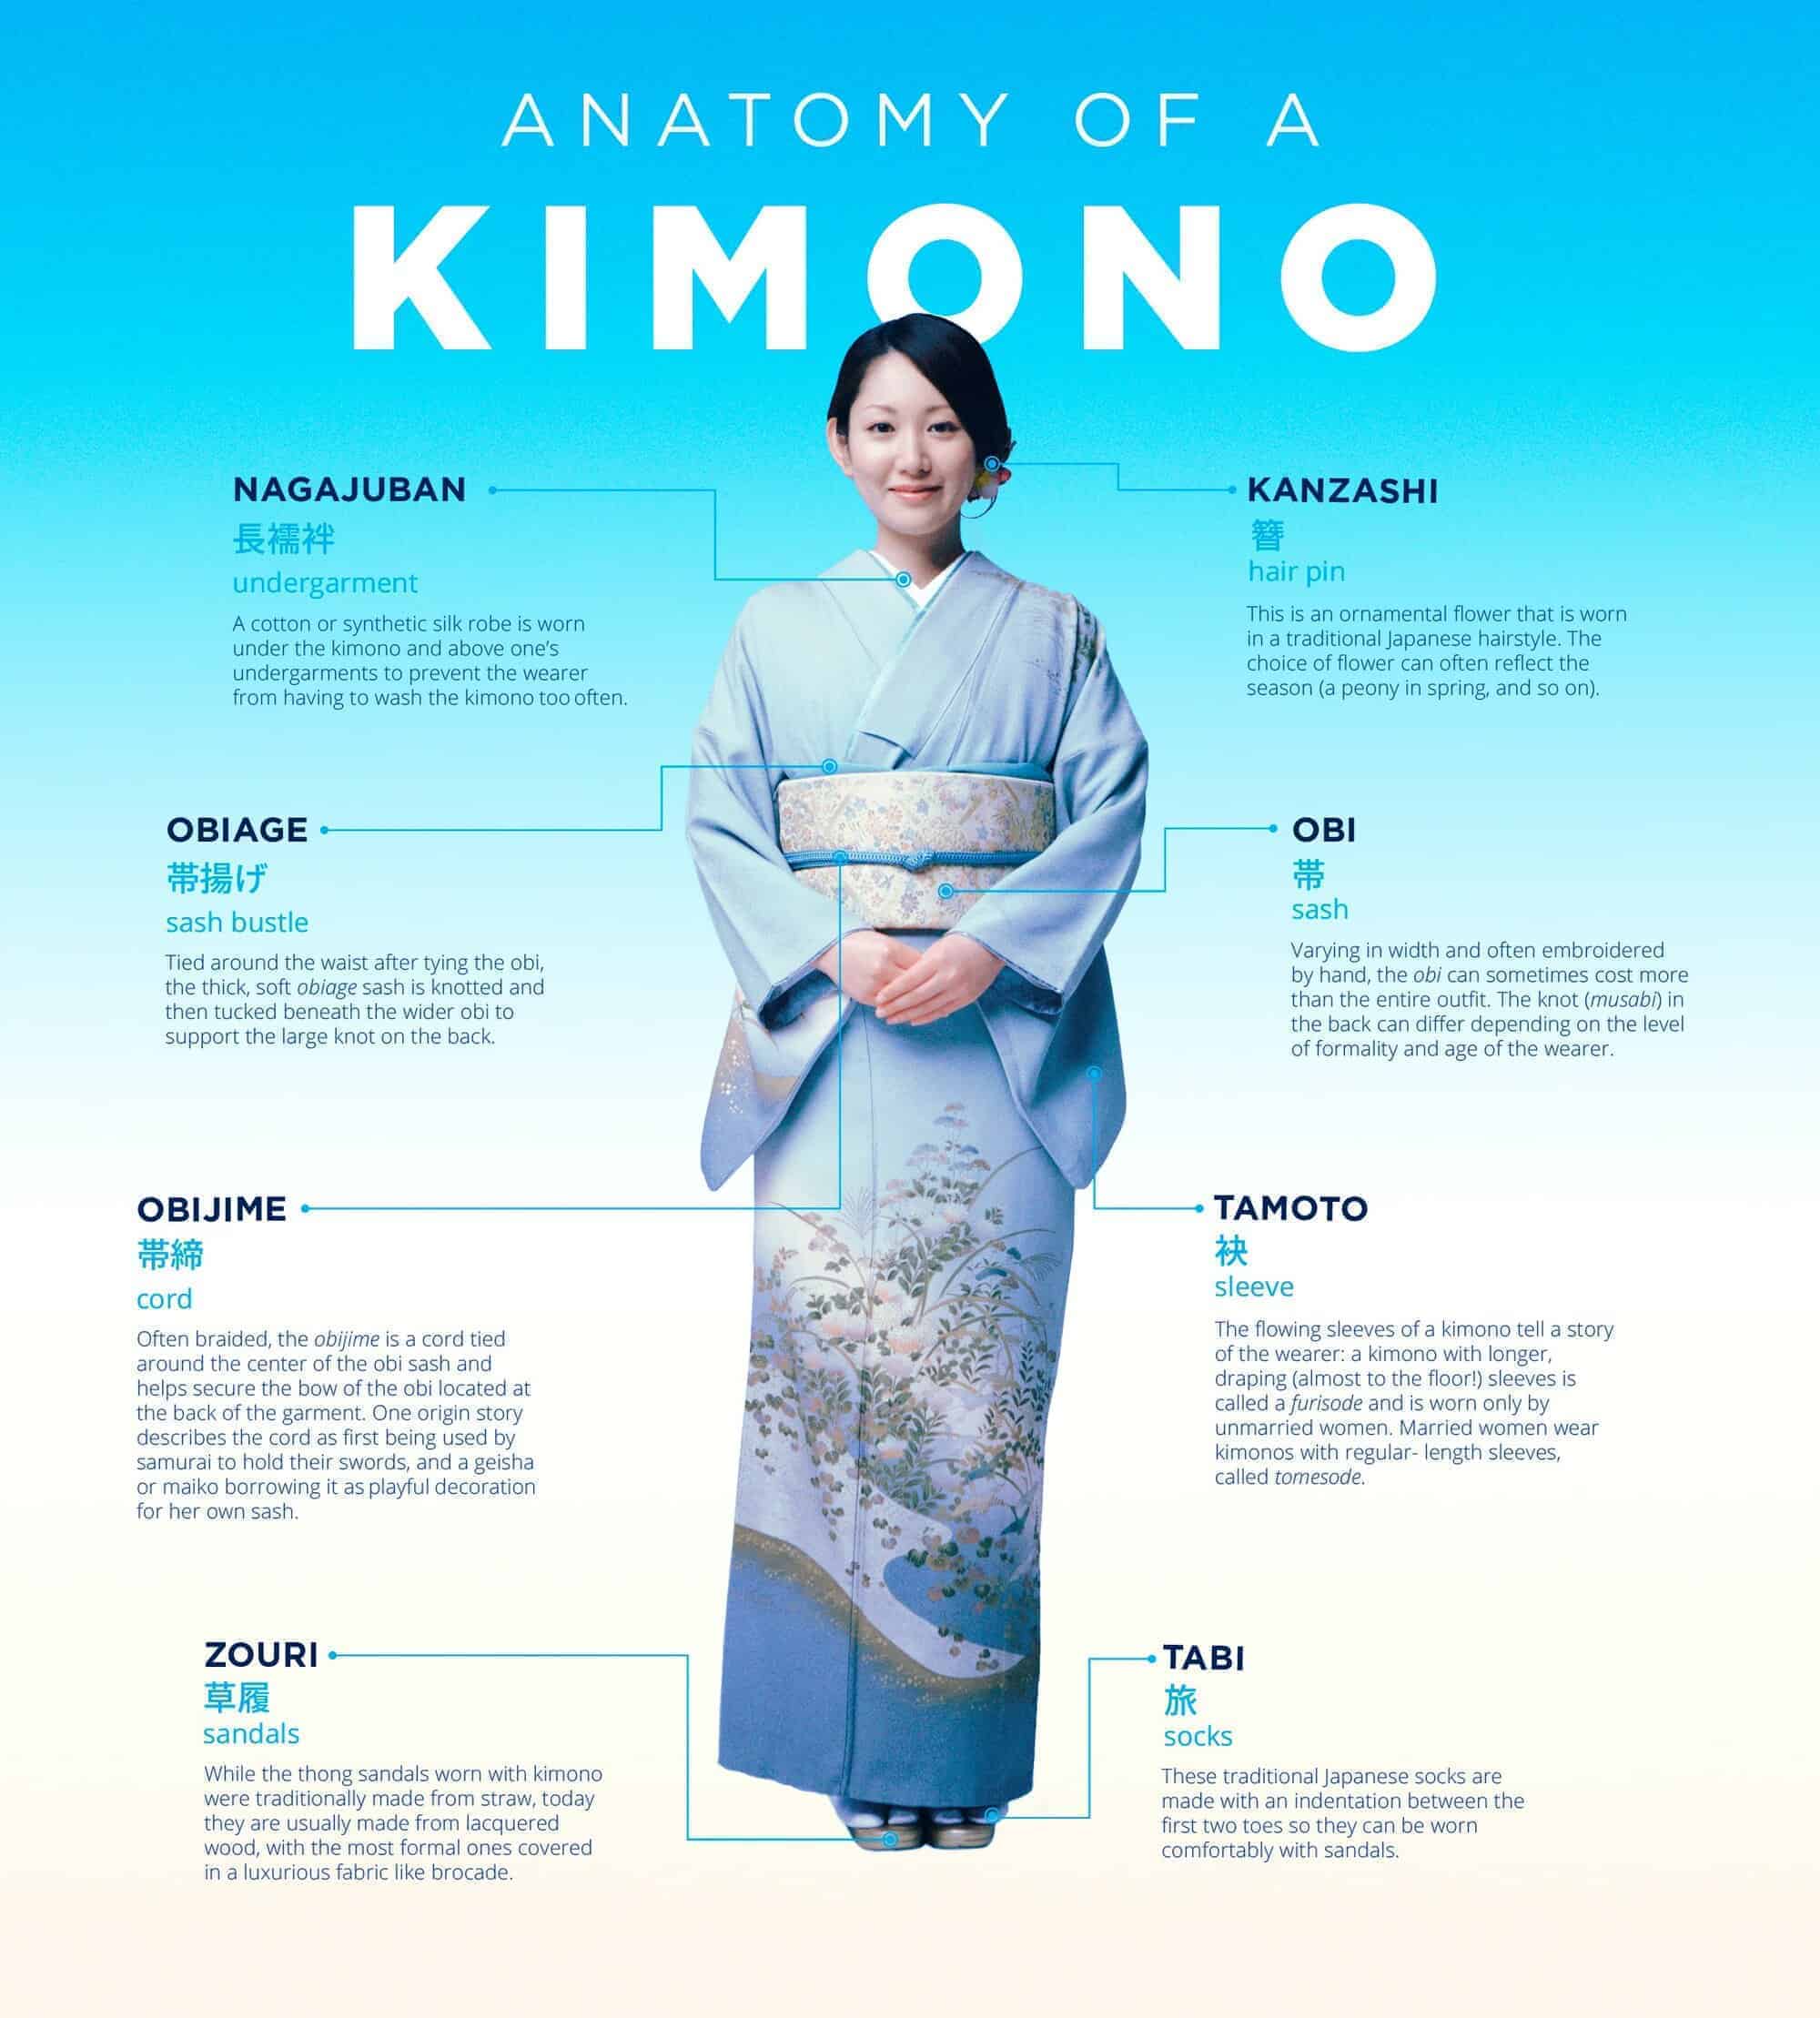 Anatomy of a kimono